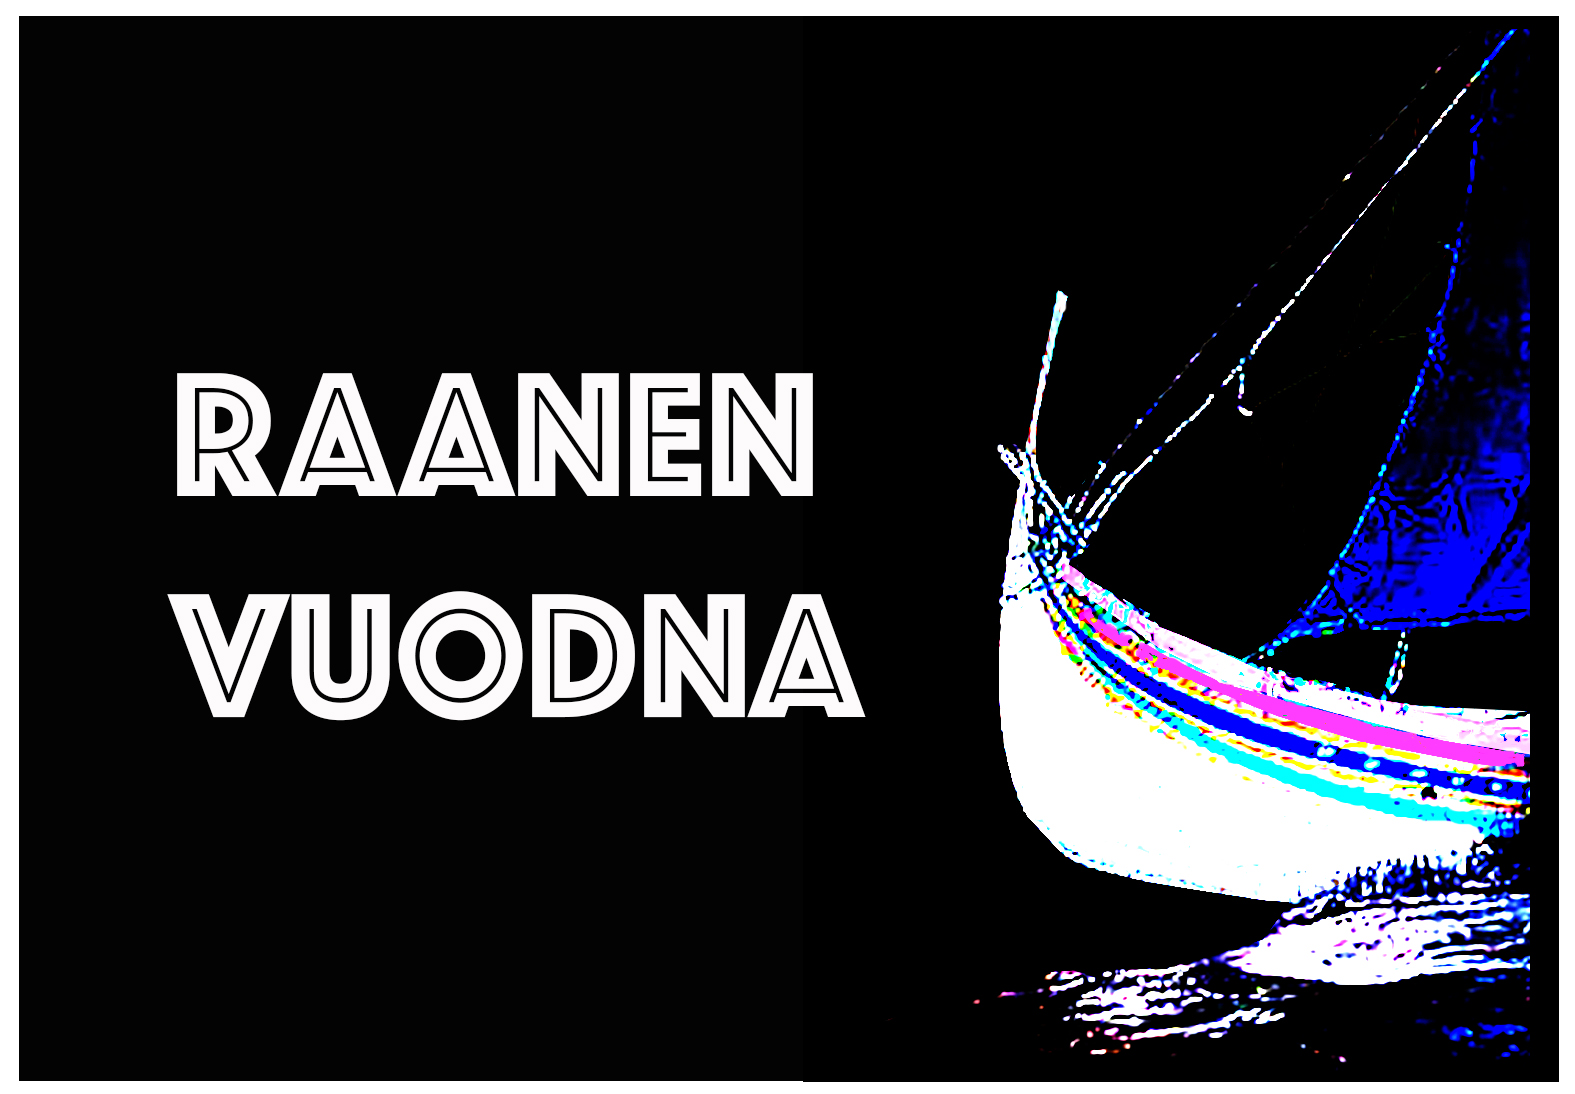 Raanen Vuodna logo